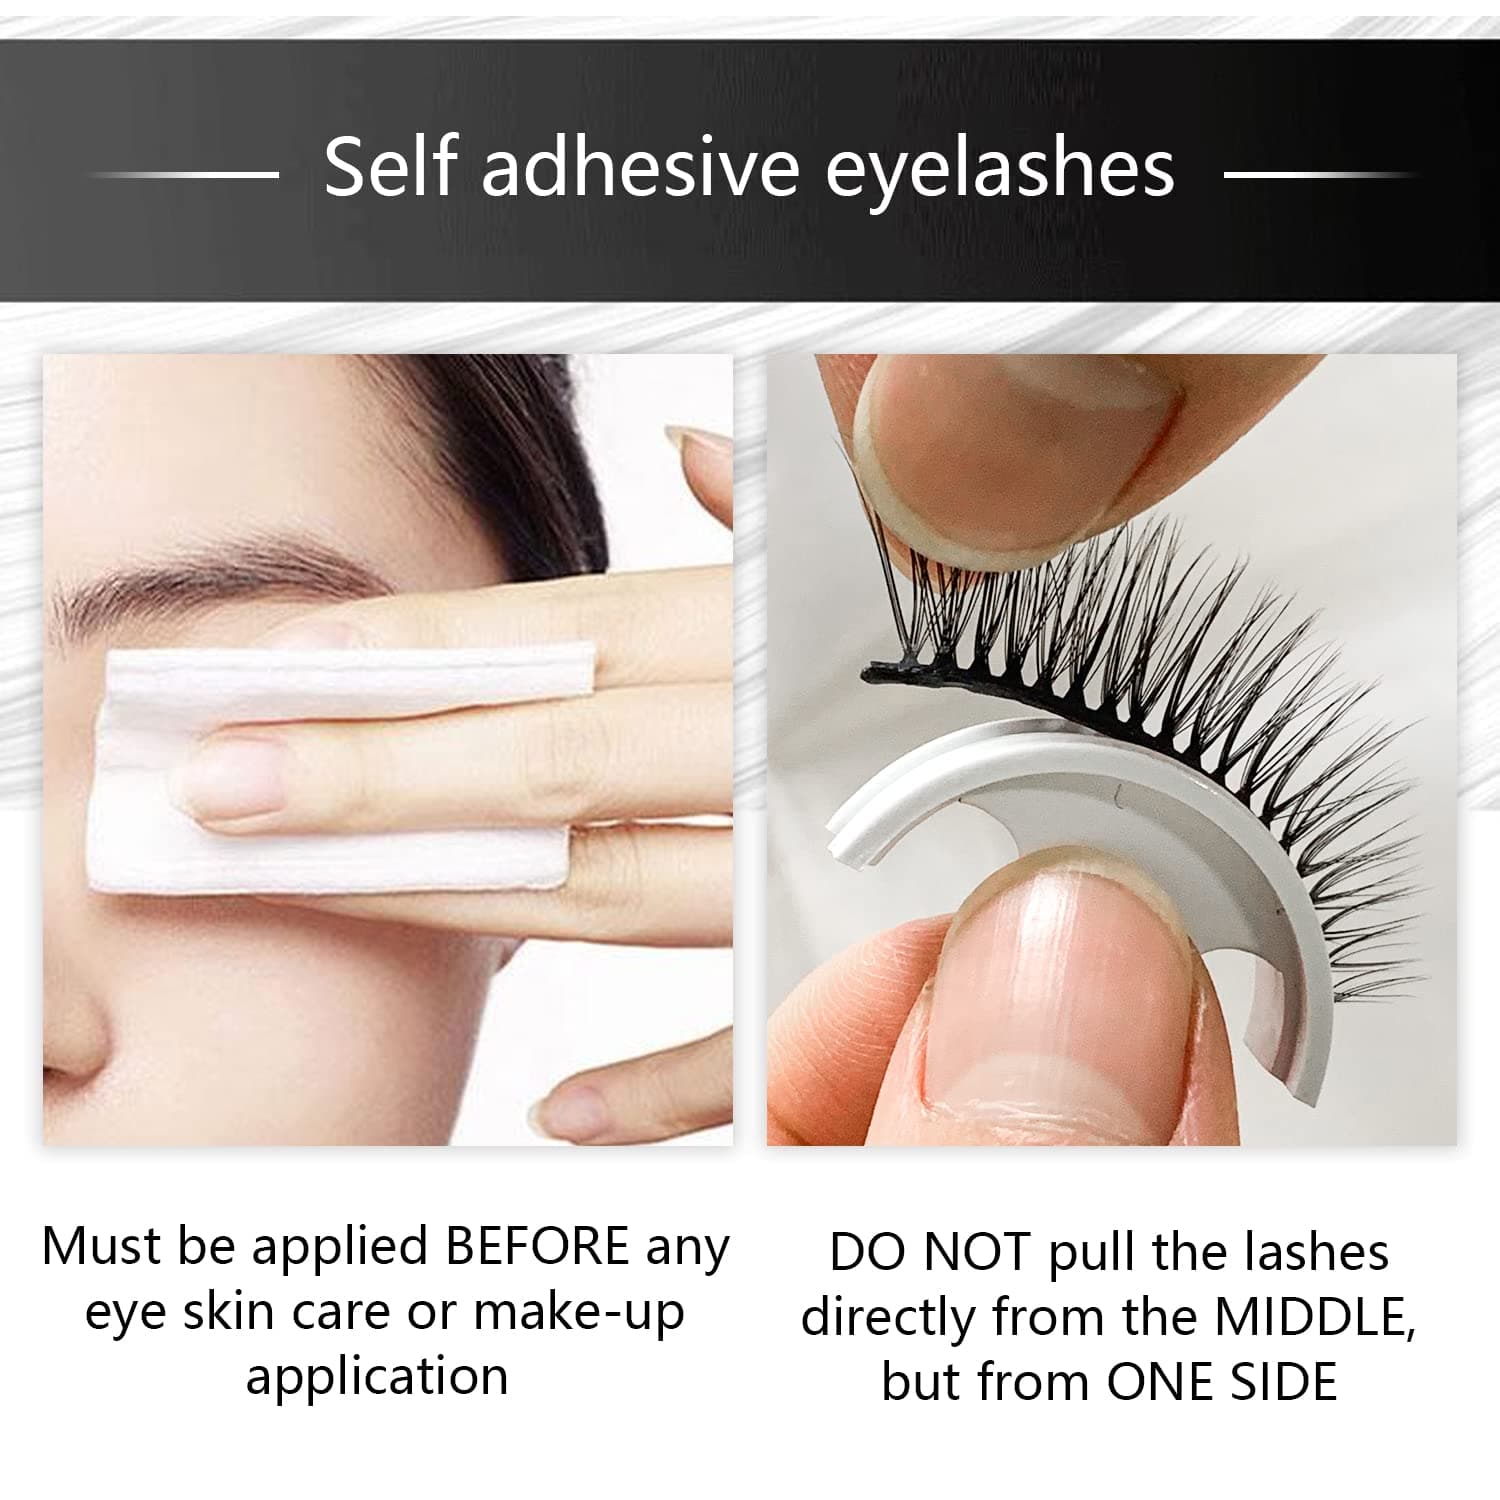 Imakeupnow - Self Adhesive False Eyelashes - no glue needed